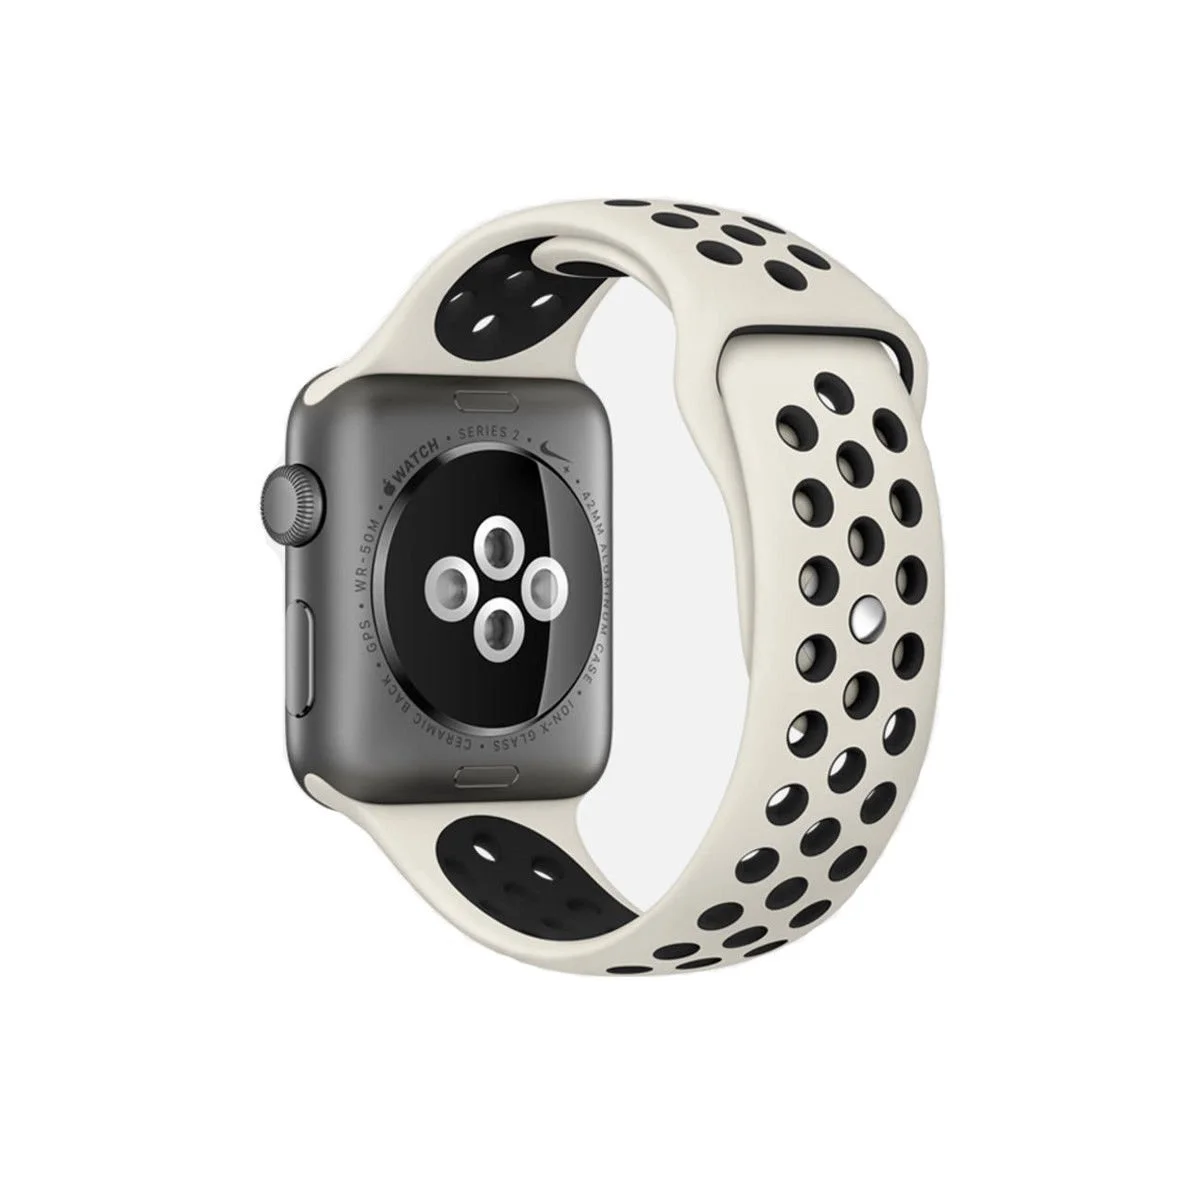 Řemínek iMore SPORT pro Apple Watch Series 4/5/6/SE (44mm) - Anticky bílý/Černý